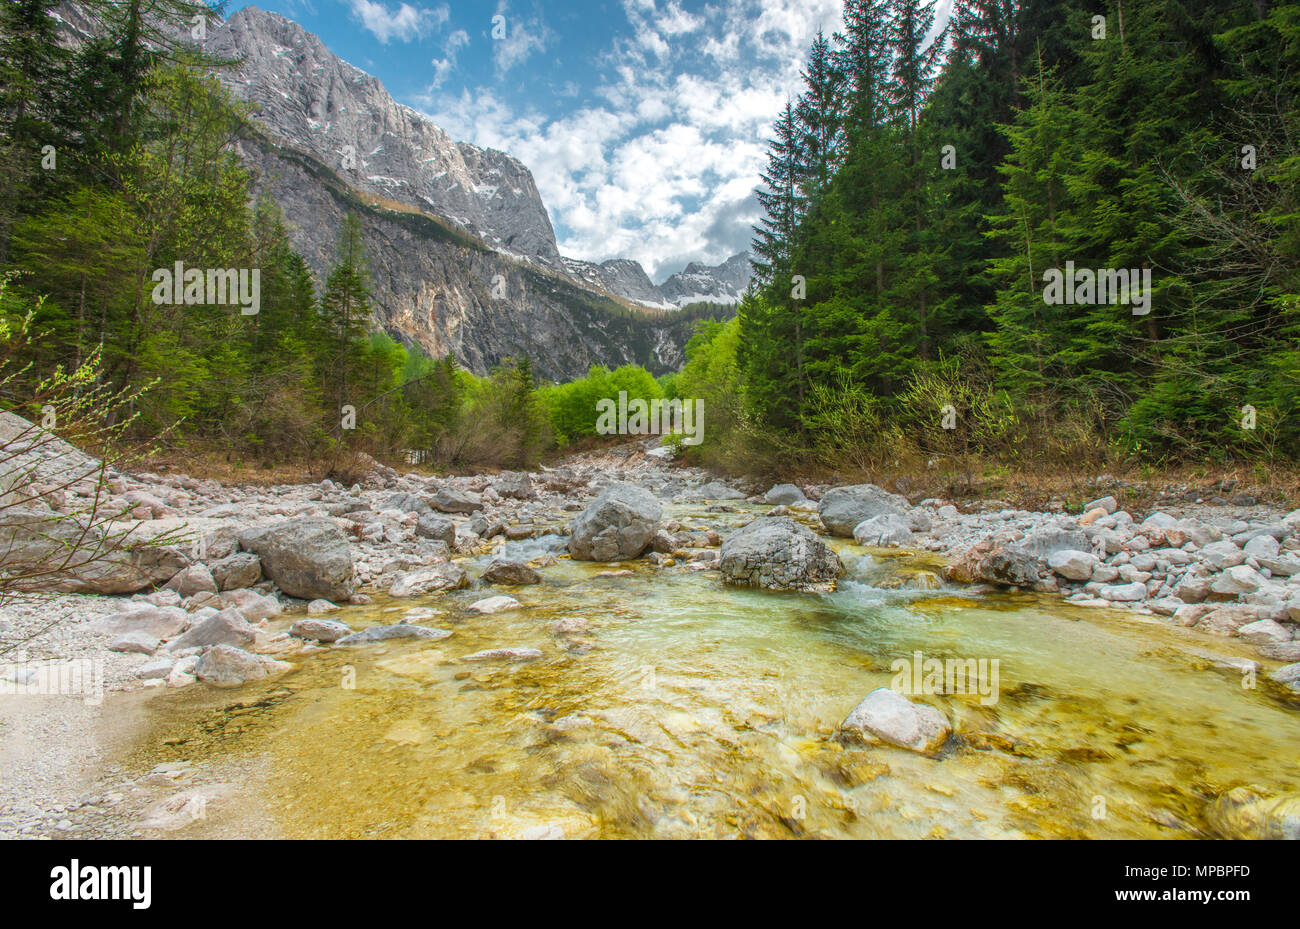 Isonzo - Soca fondo valle. - Glaciale alimentato, crystal clear fiume che scorre verso il basso attraverso le rocce e massi, circondato da fitti boschi e montagne. Foto Stock